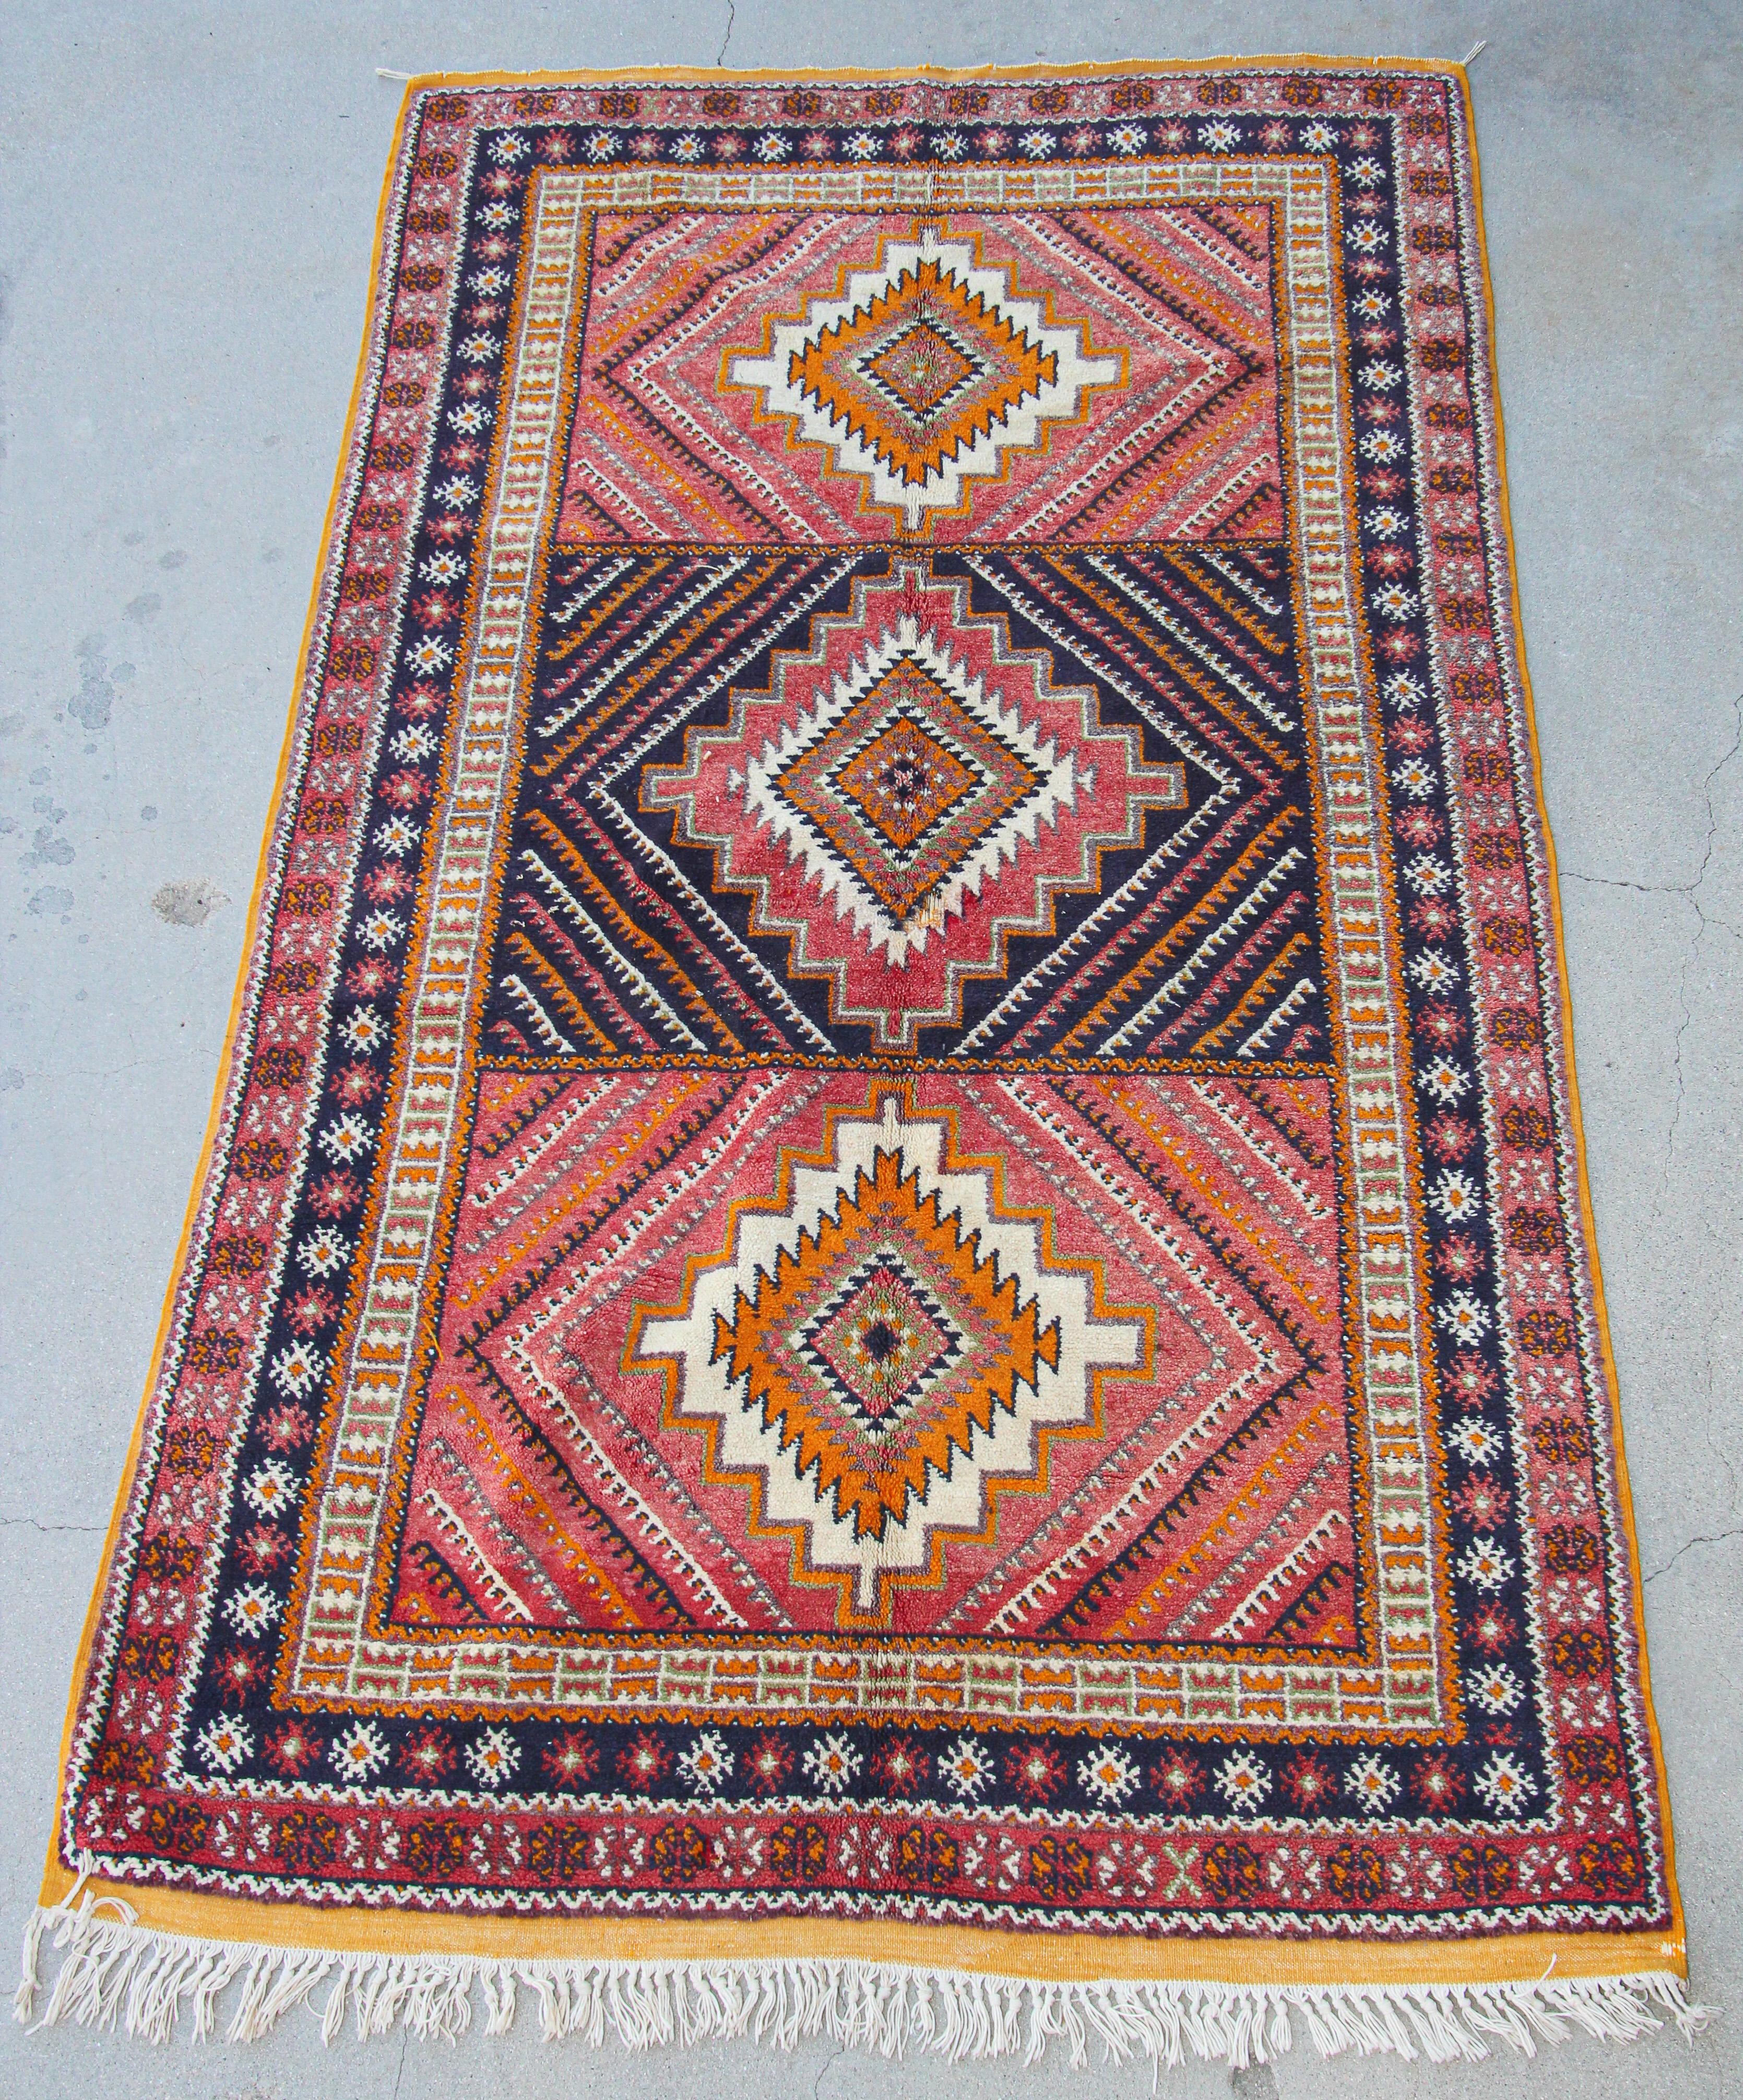 Authentischer marokkanischer Vintage-Teppich aus den 1960er Jahren, handgewebt von marokkanischen Berberfrauen unter Verwendung von Bio-Lammwolle und Bio-Farbstoff.Nordafrikanischer marokkanischer Stammesläufer mit niedrigem Flor, handgeknüpft von